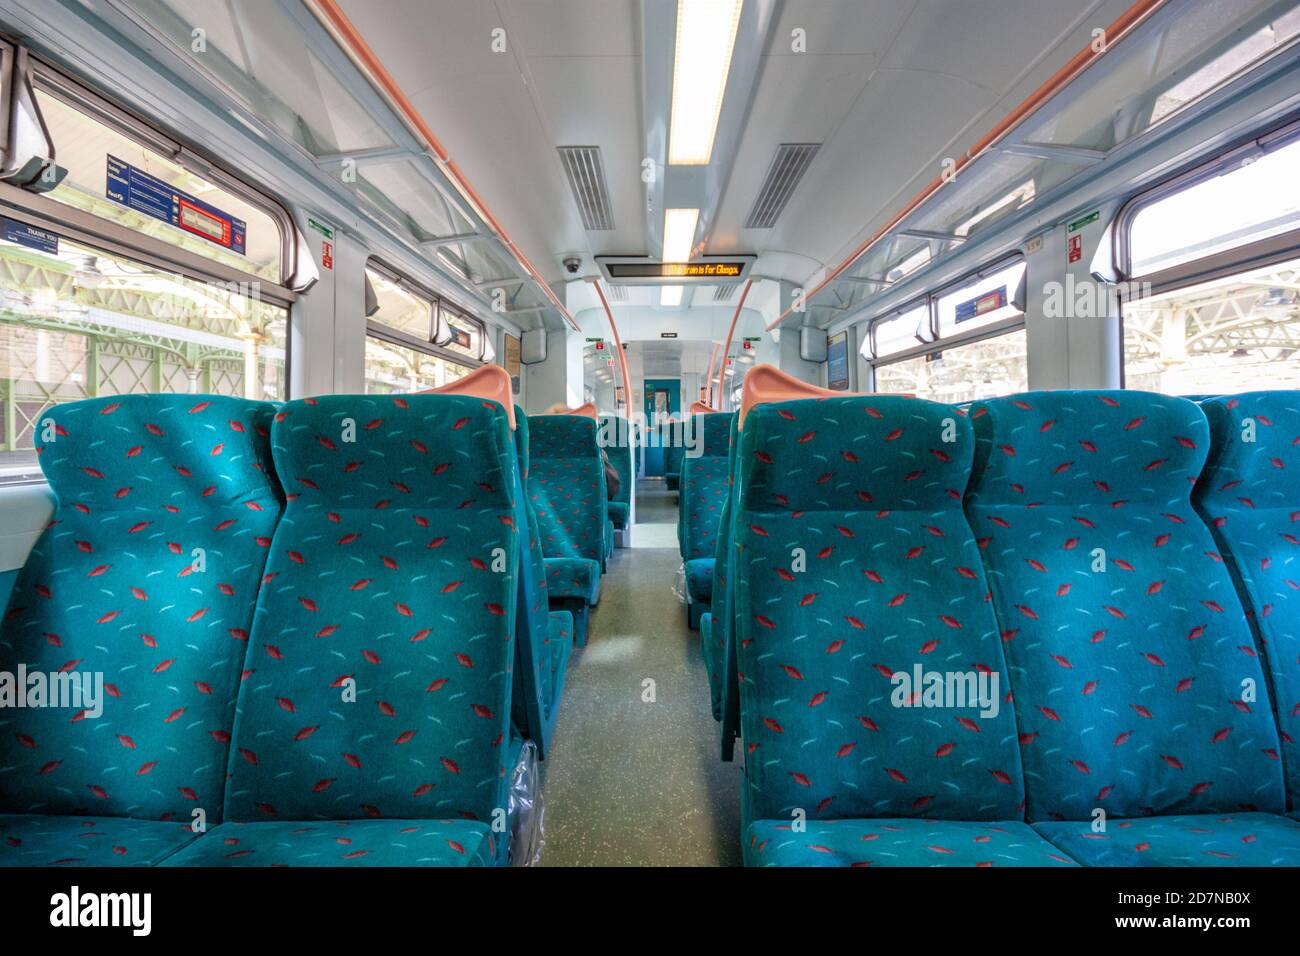 Innenraum des britischen Eisenbahn-Klasse 318 Zug Schottland UK, 2010 mit 2 + 3 Layout grünen Sitze. Stockfoto